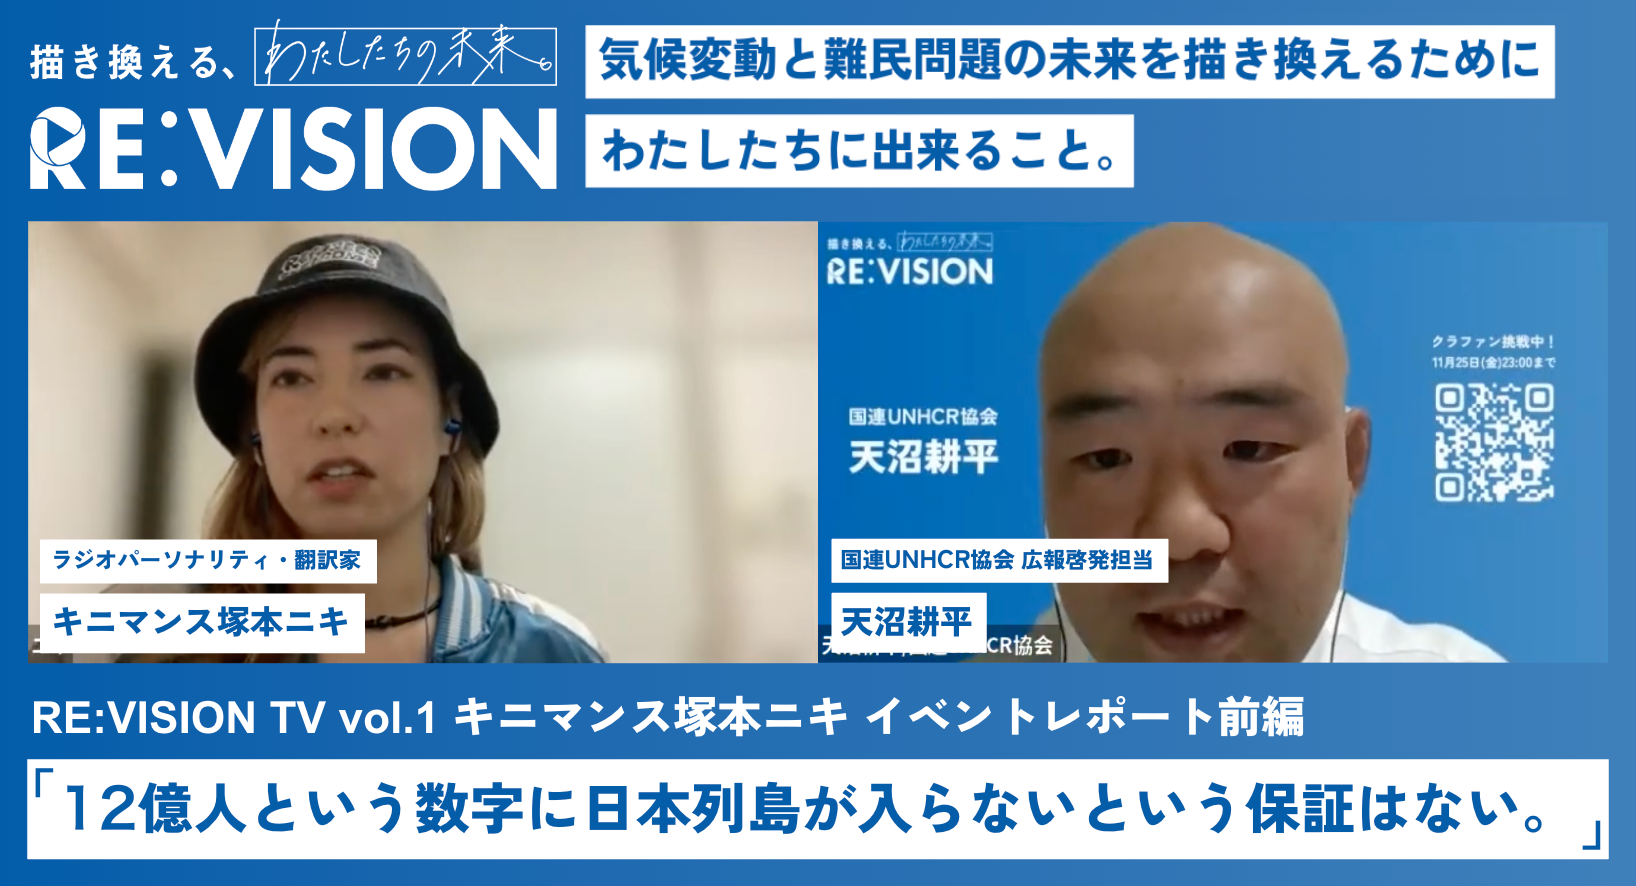 RE:VISION TV vol.1 イベントレポート【前編】